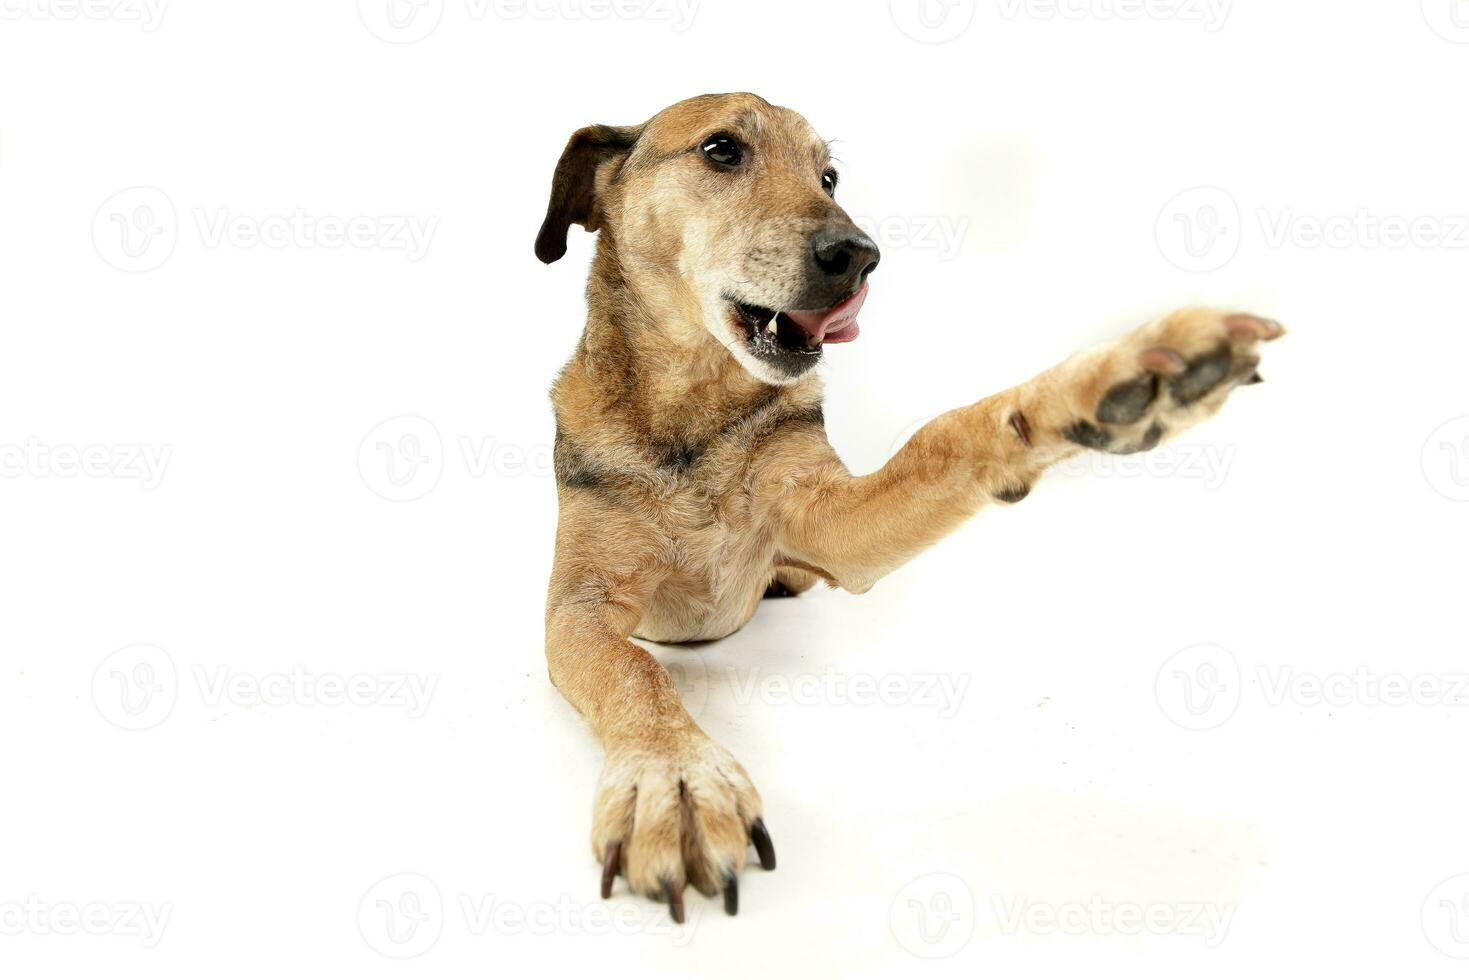 studio skott av ett förtjusande blandad ras hund foto